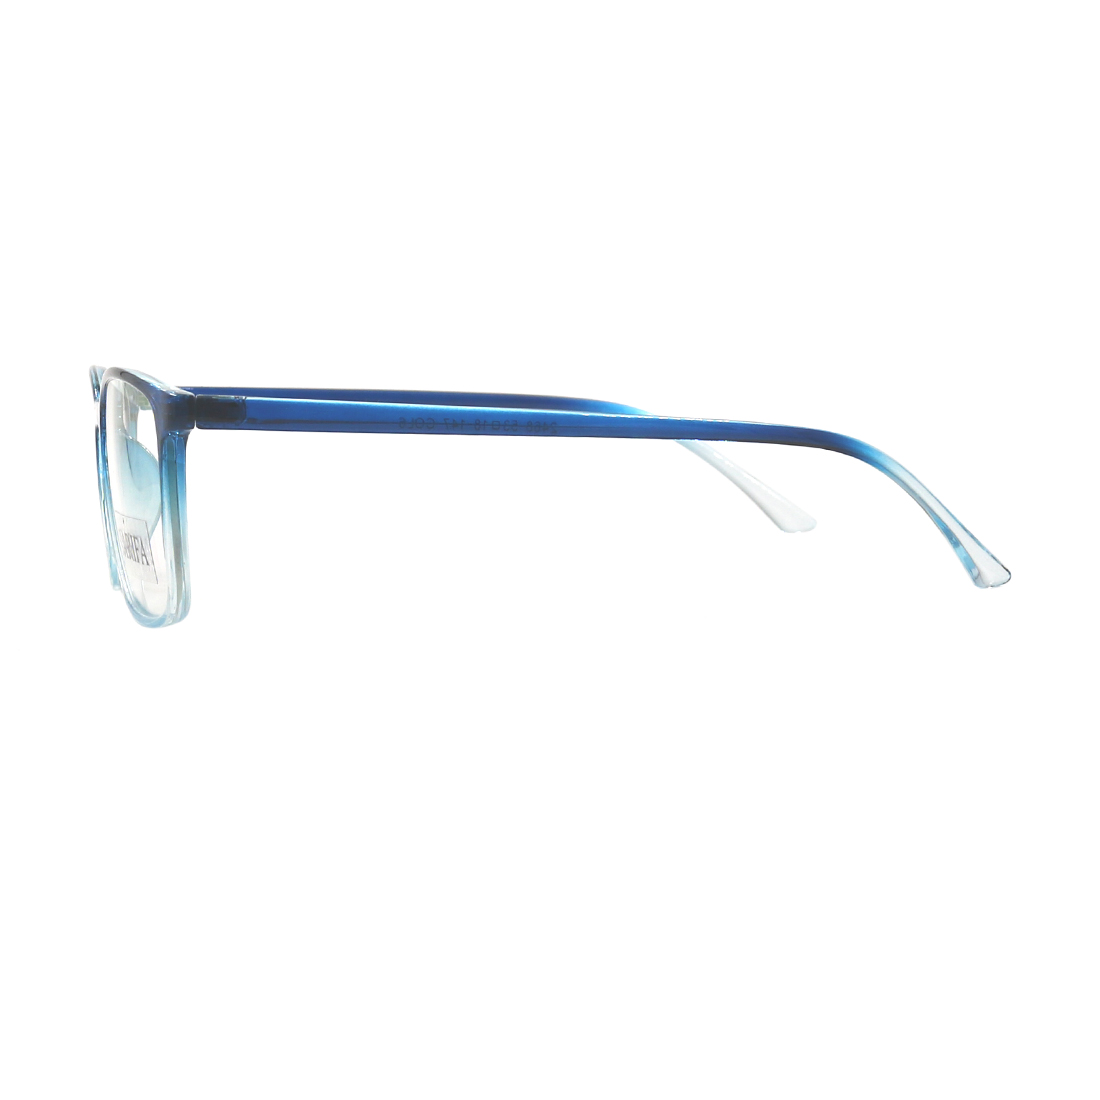 Gọng kính, mắt kính chính hãng SARIFA 2468 C6 - Tặng 1 dây đeo kính màu ngẫu nhiên